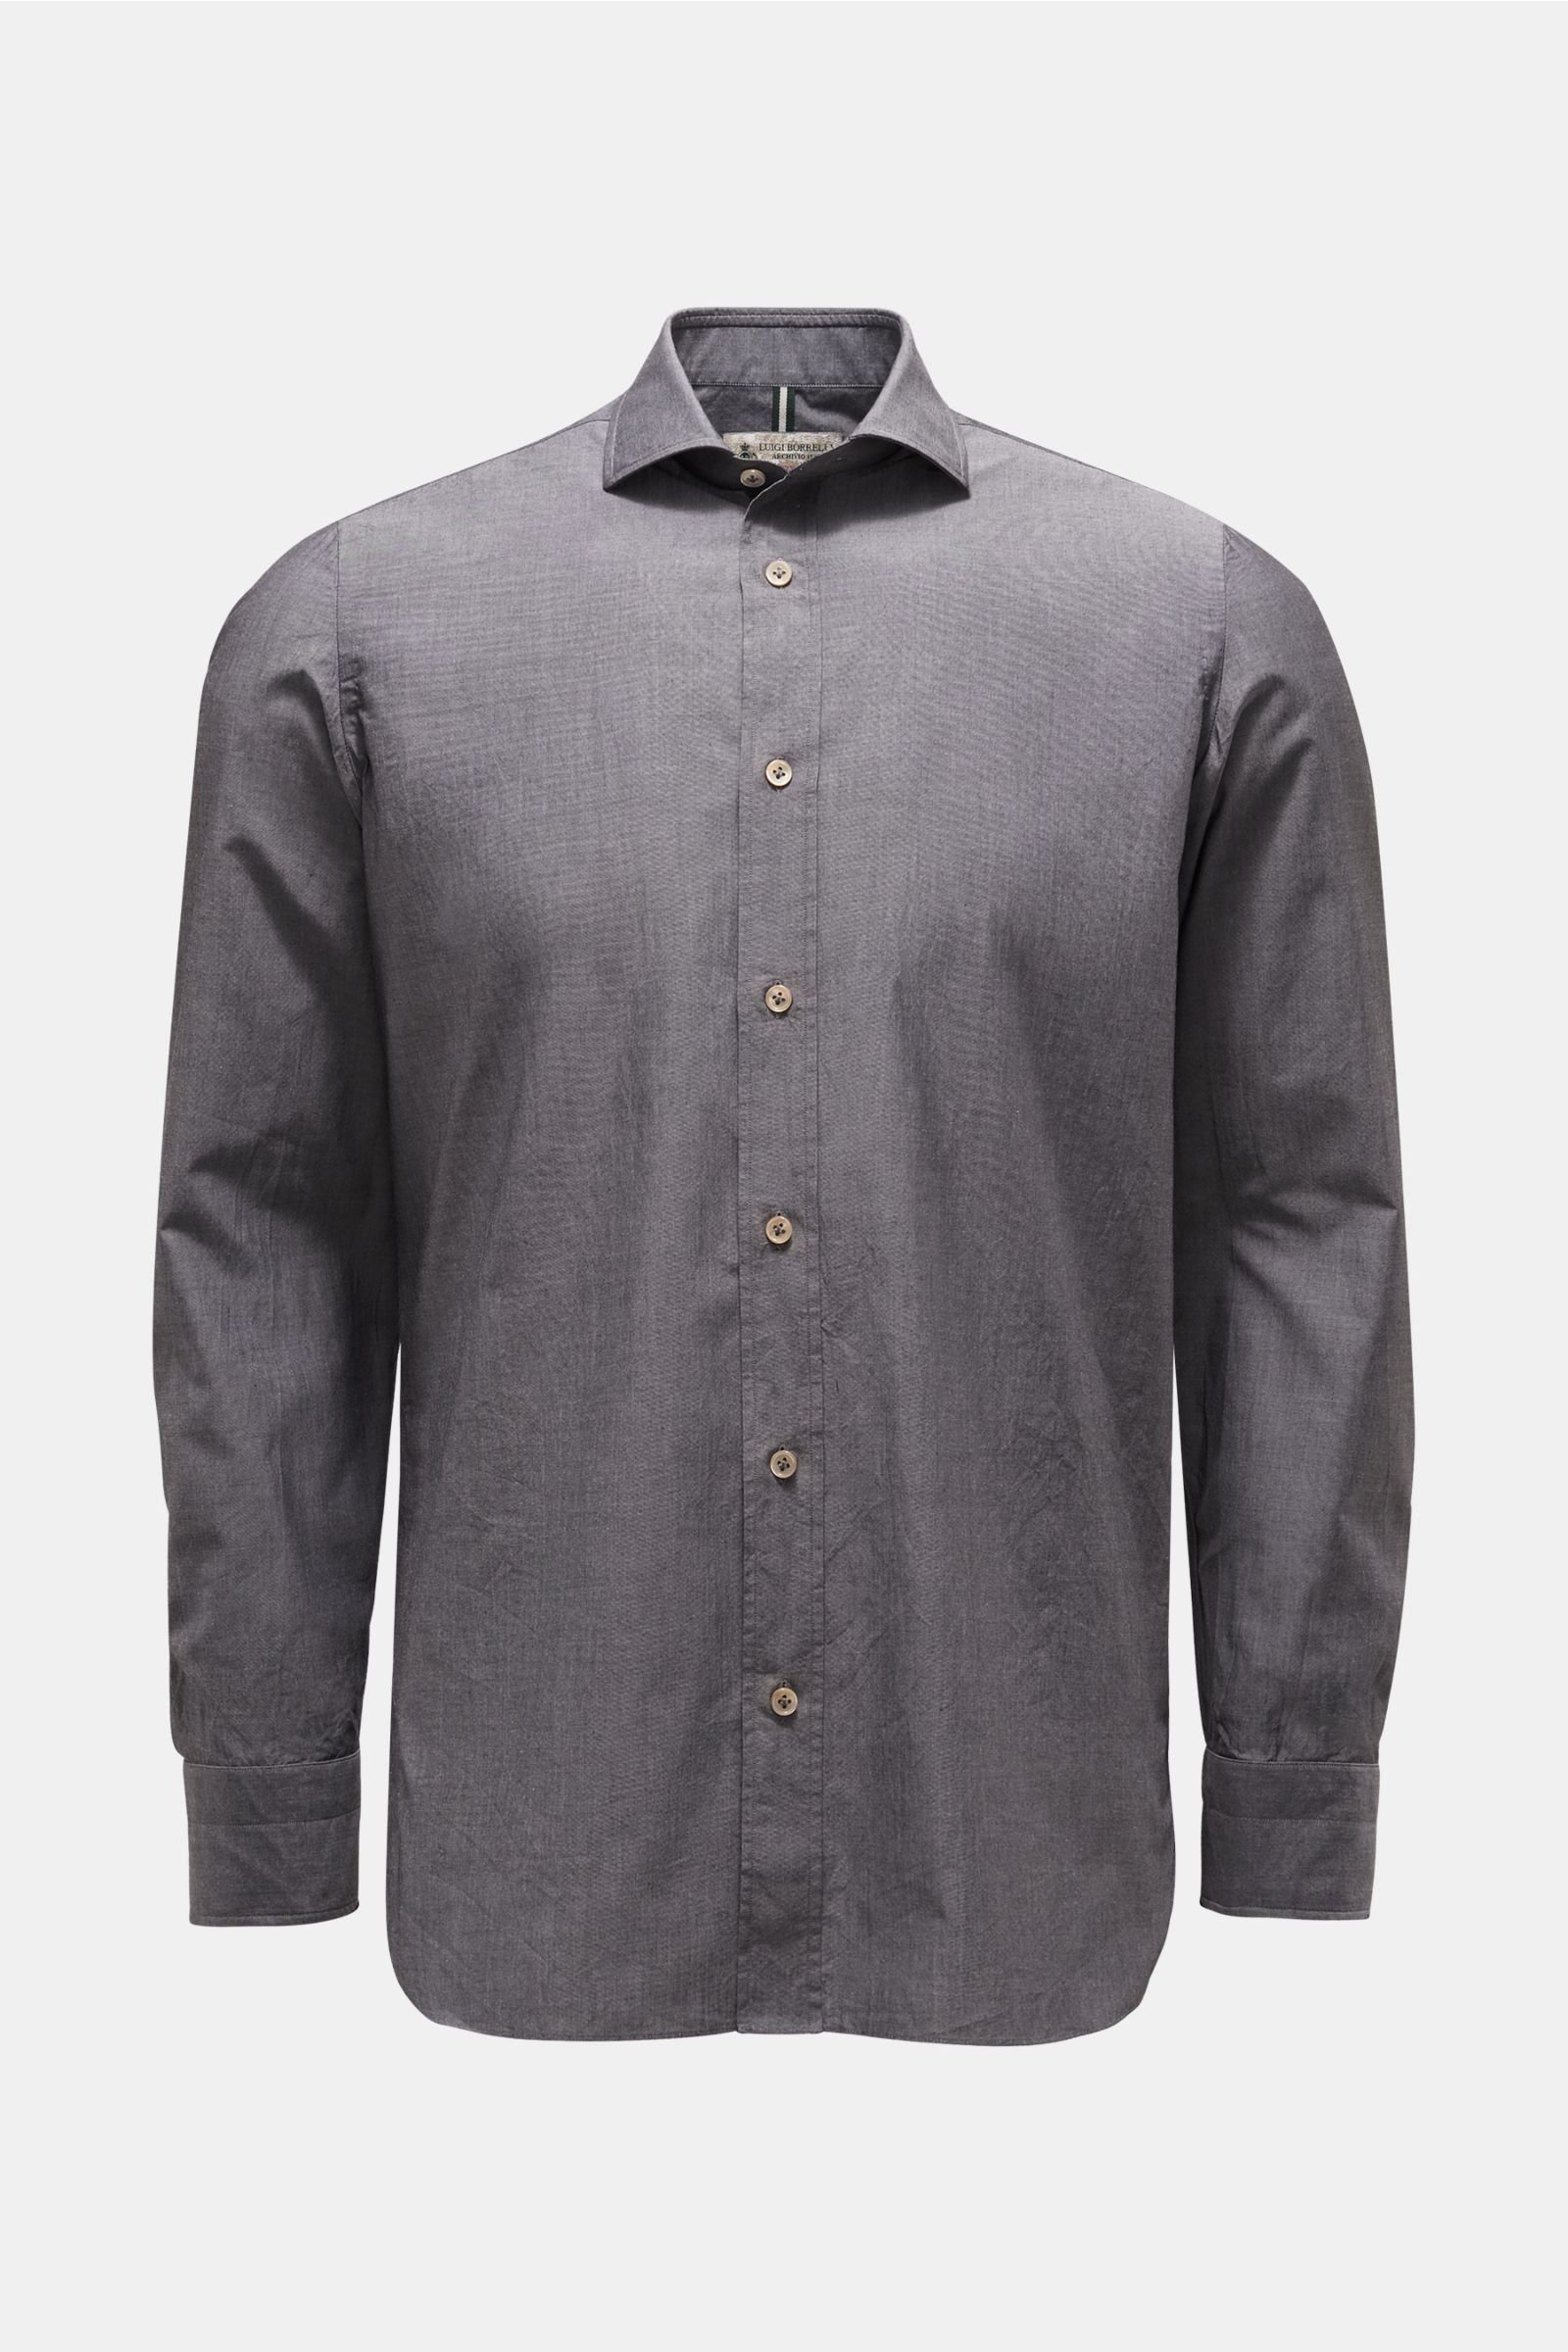 Chambray shirt narrow collar grey